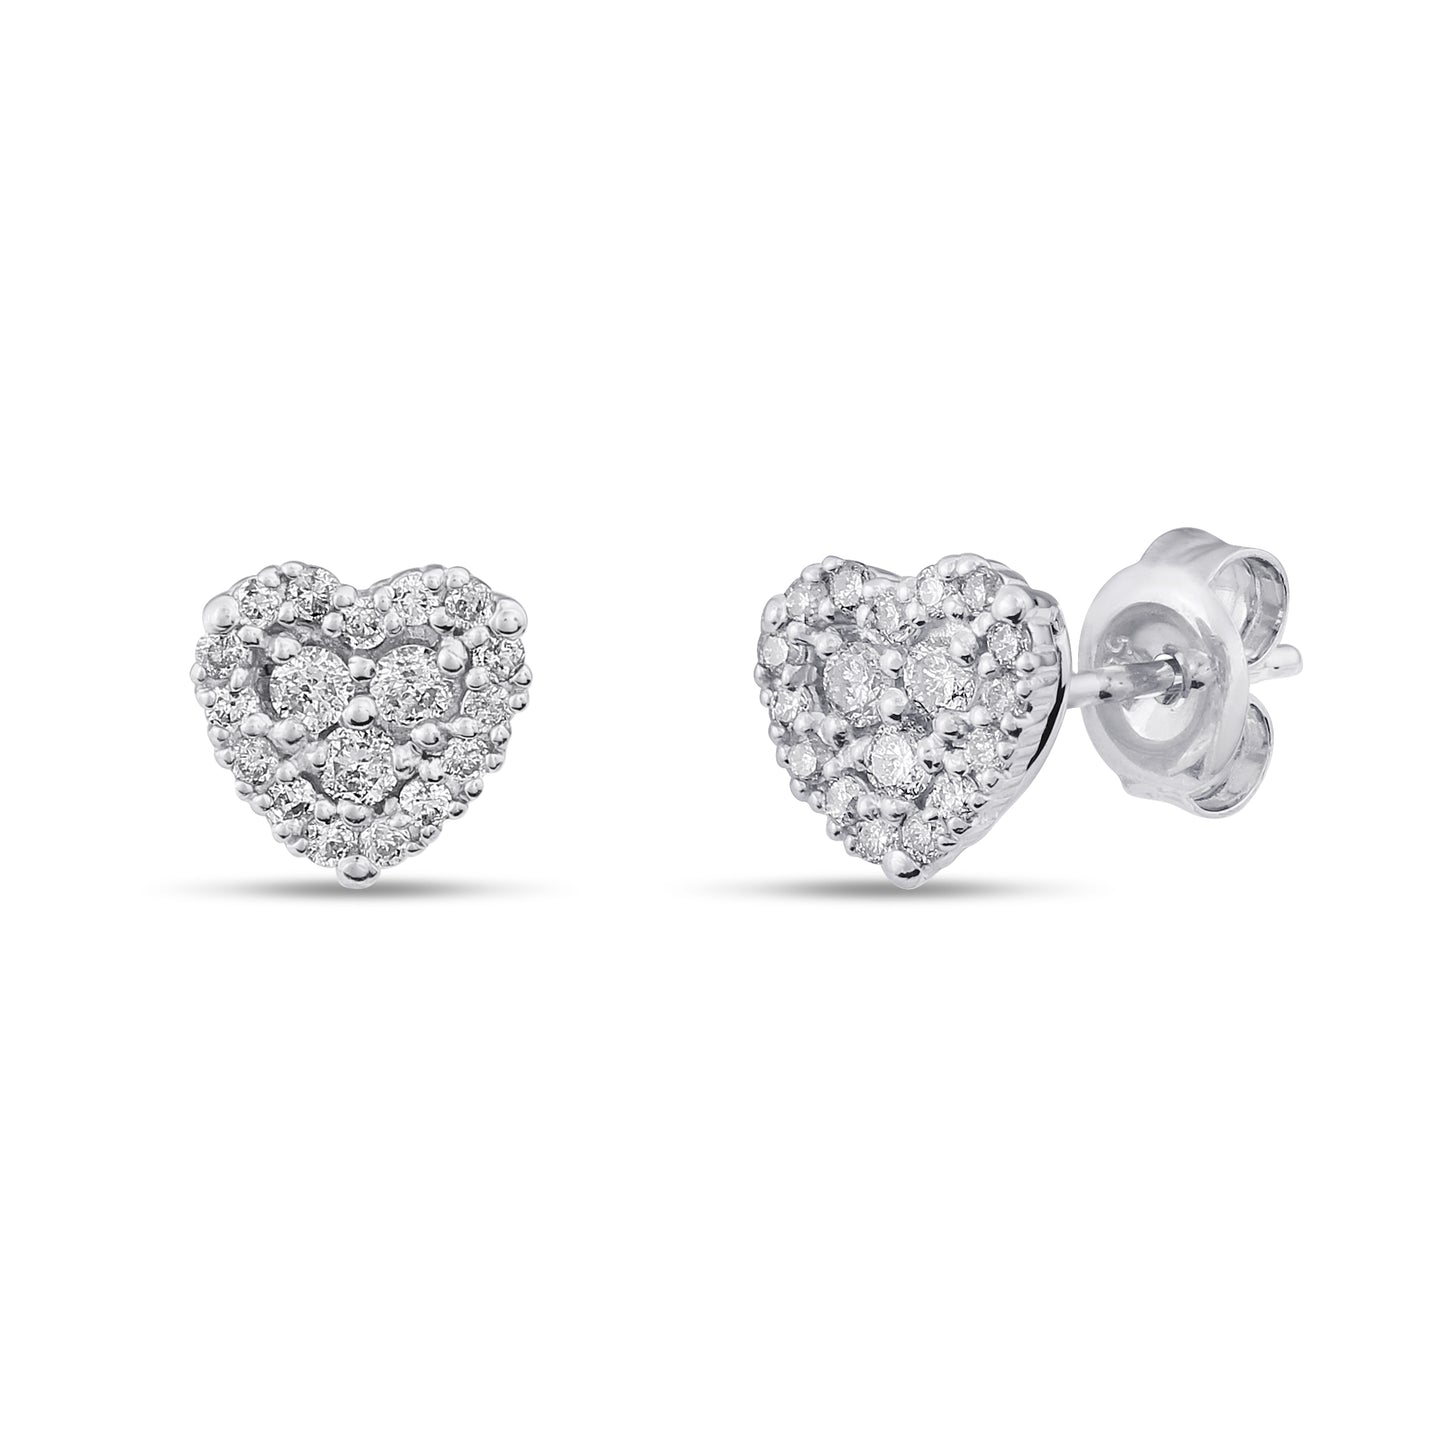 Belantina 14K Gold & Diamond Heart Earrings